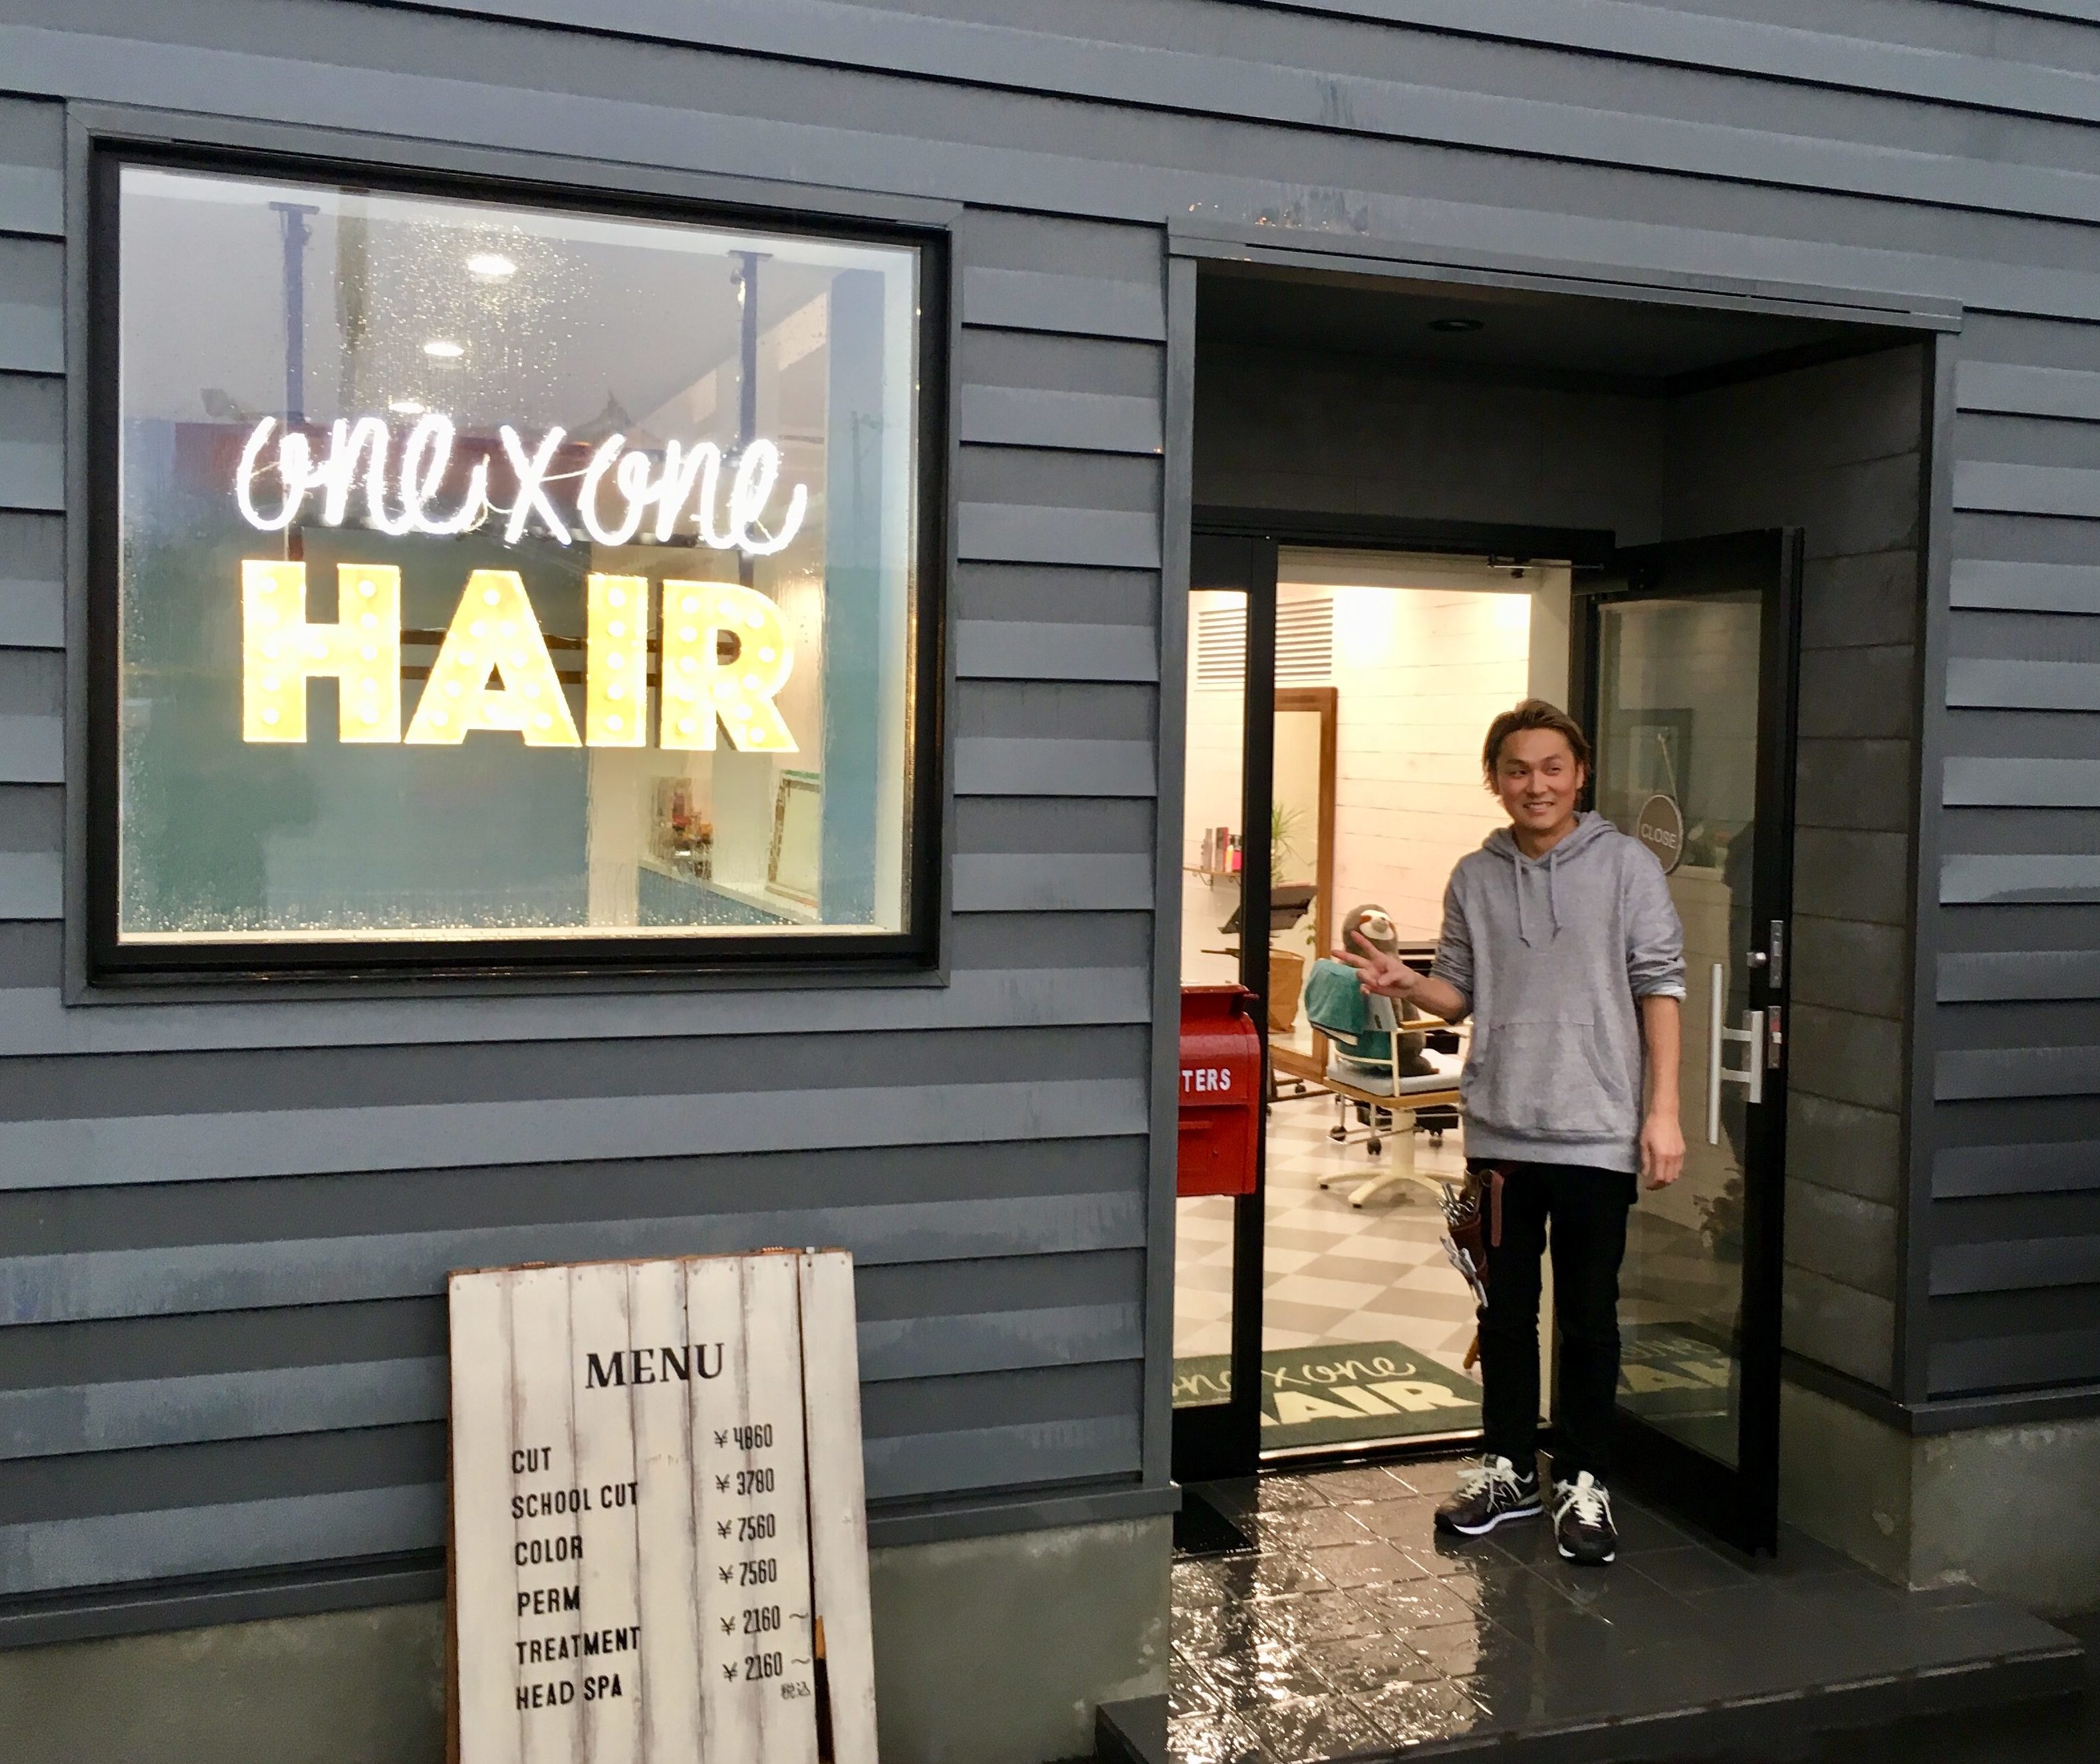 移転 One One Hair ワンバイワンヘア 富山市 明るくキレイな美容院が富山市石金に18年9月オープン カットはもちろん ハイライトなどカラーの技術もハイレベル ツタエル富山